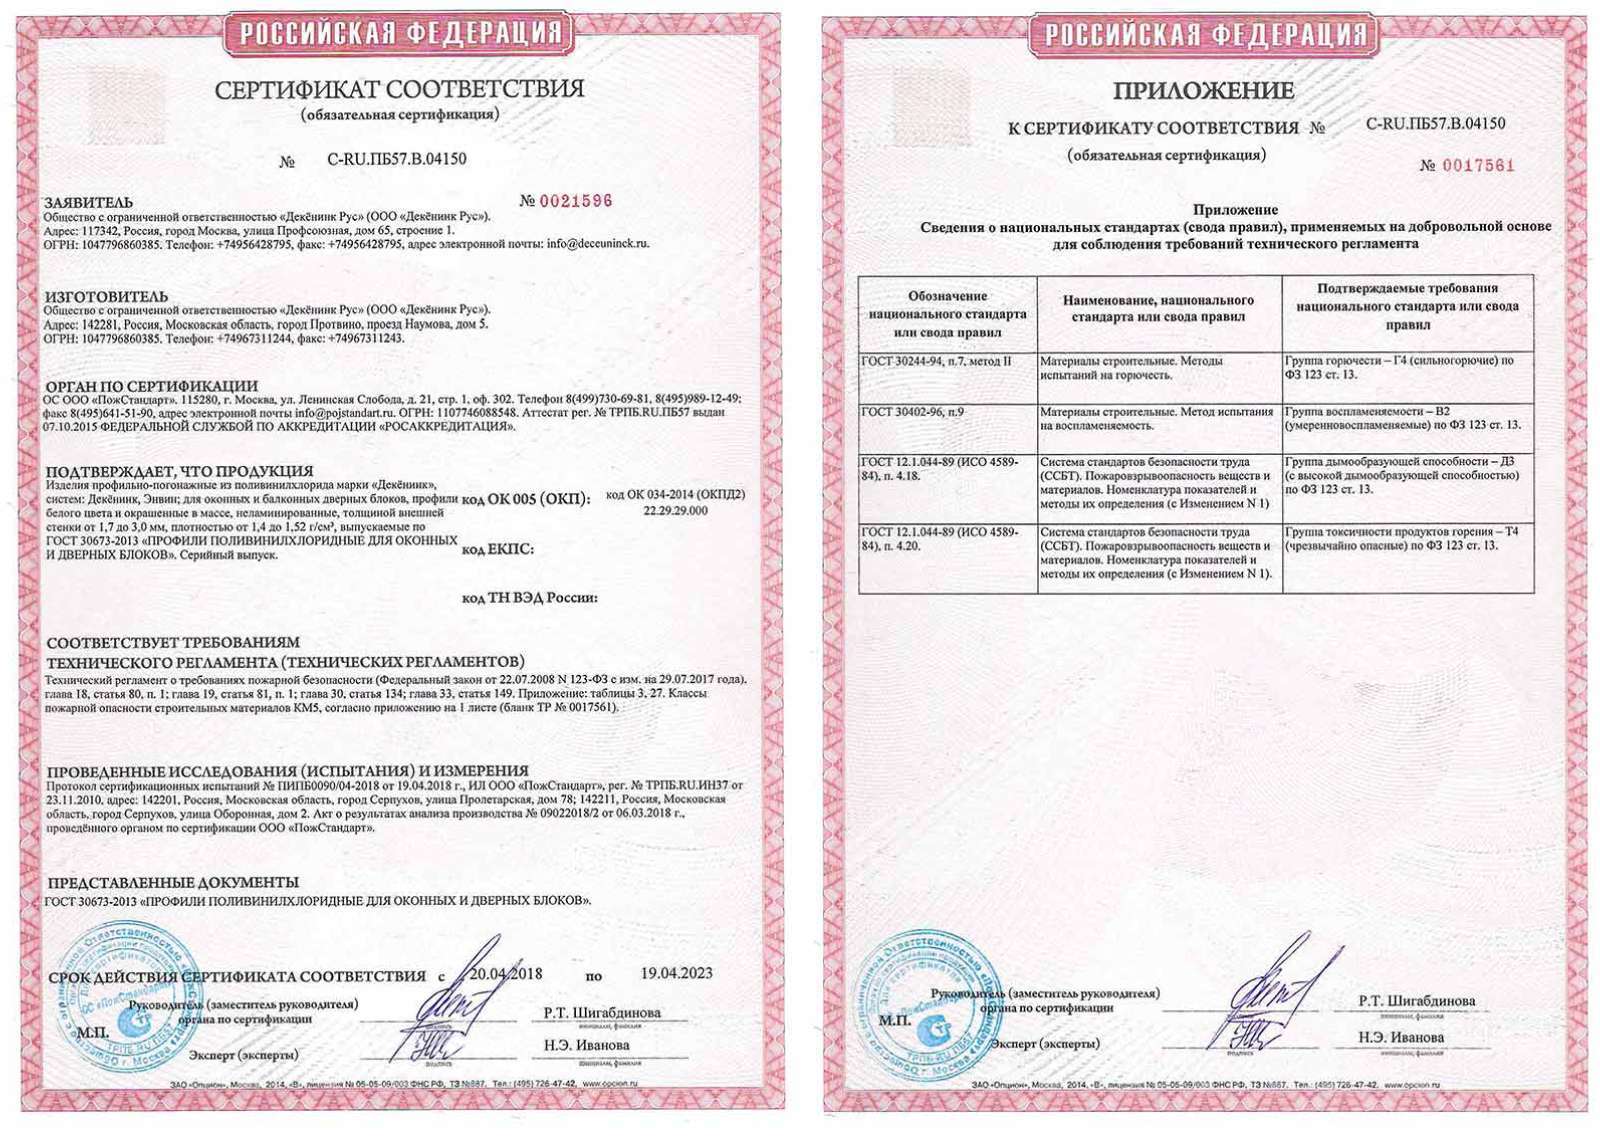 Сертификат соответствия профиля пожарной безопасности 123−ФЗ от 29.07.17